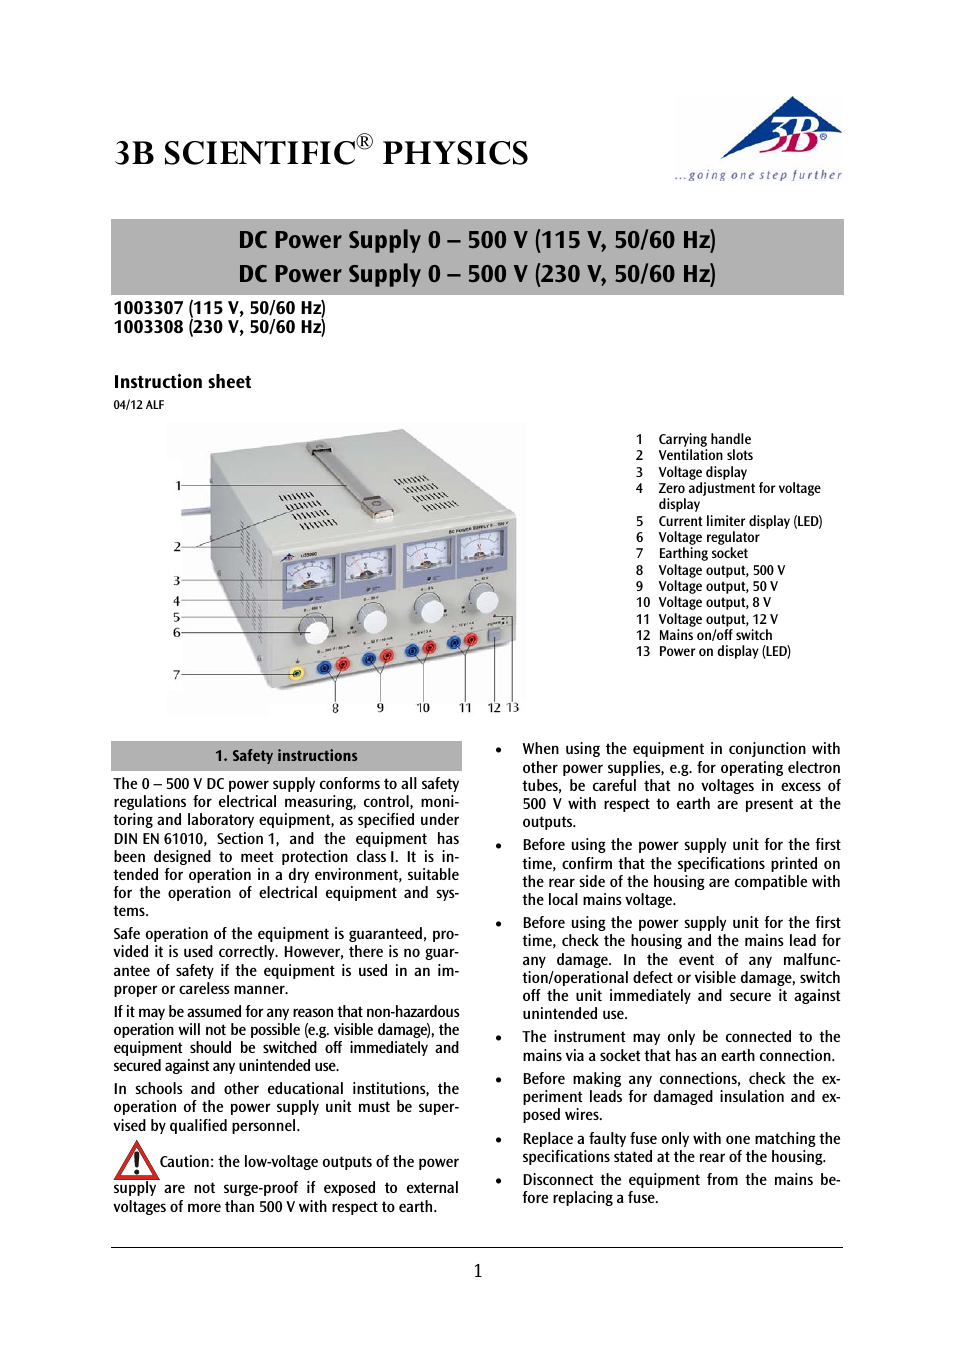 DC Power Supply 0-500 V (115 V, 50__60 Hz)